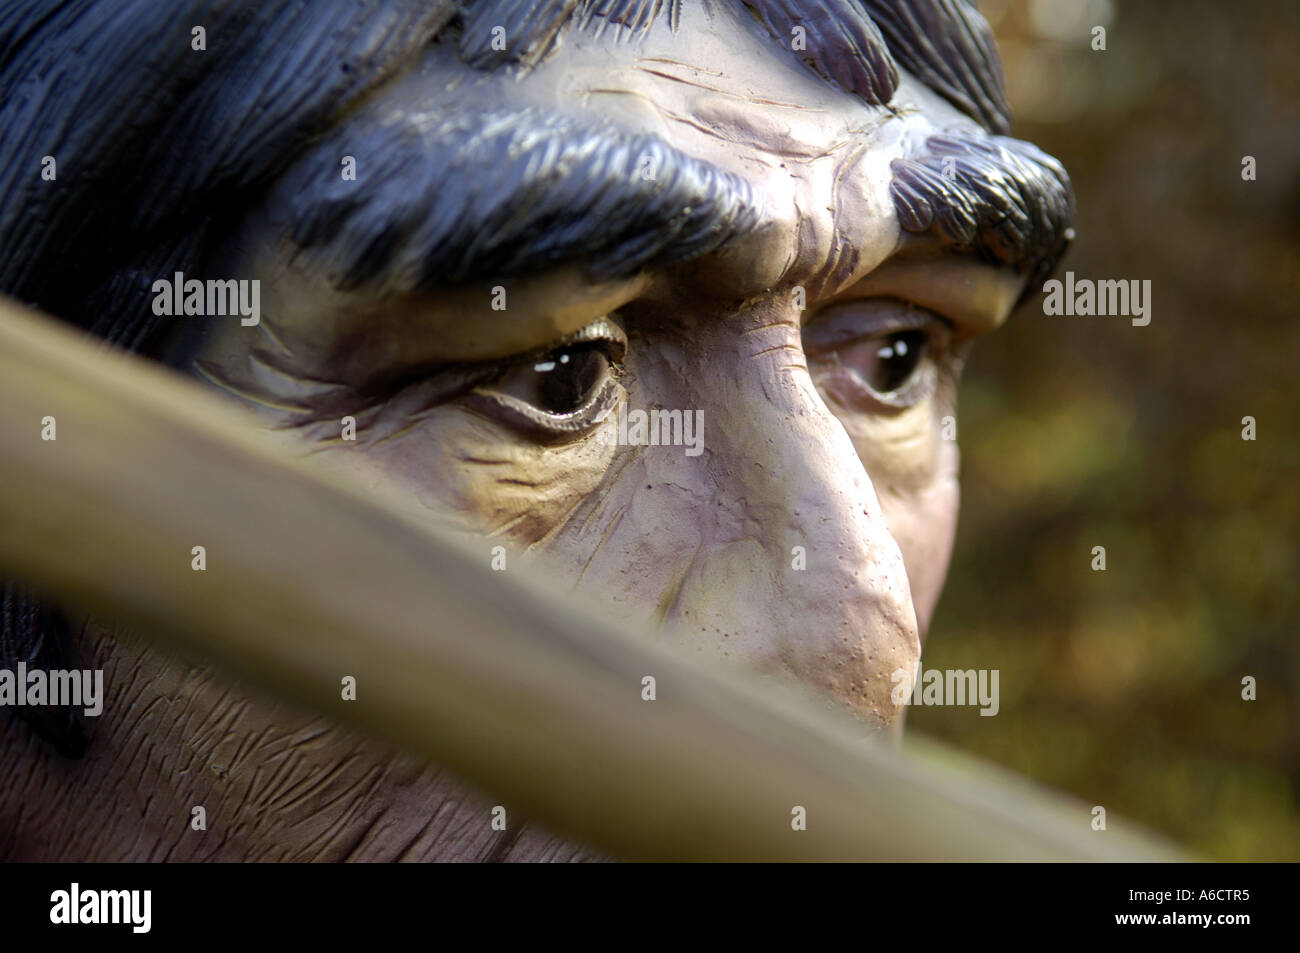 Preistorici faccia di testa grande occhio marrone uomo umano maschio umanoide armati di Neanderthal hunter lancia arma kill attacco Foto Stock